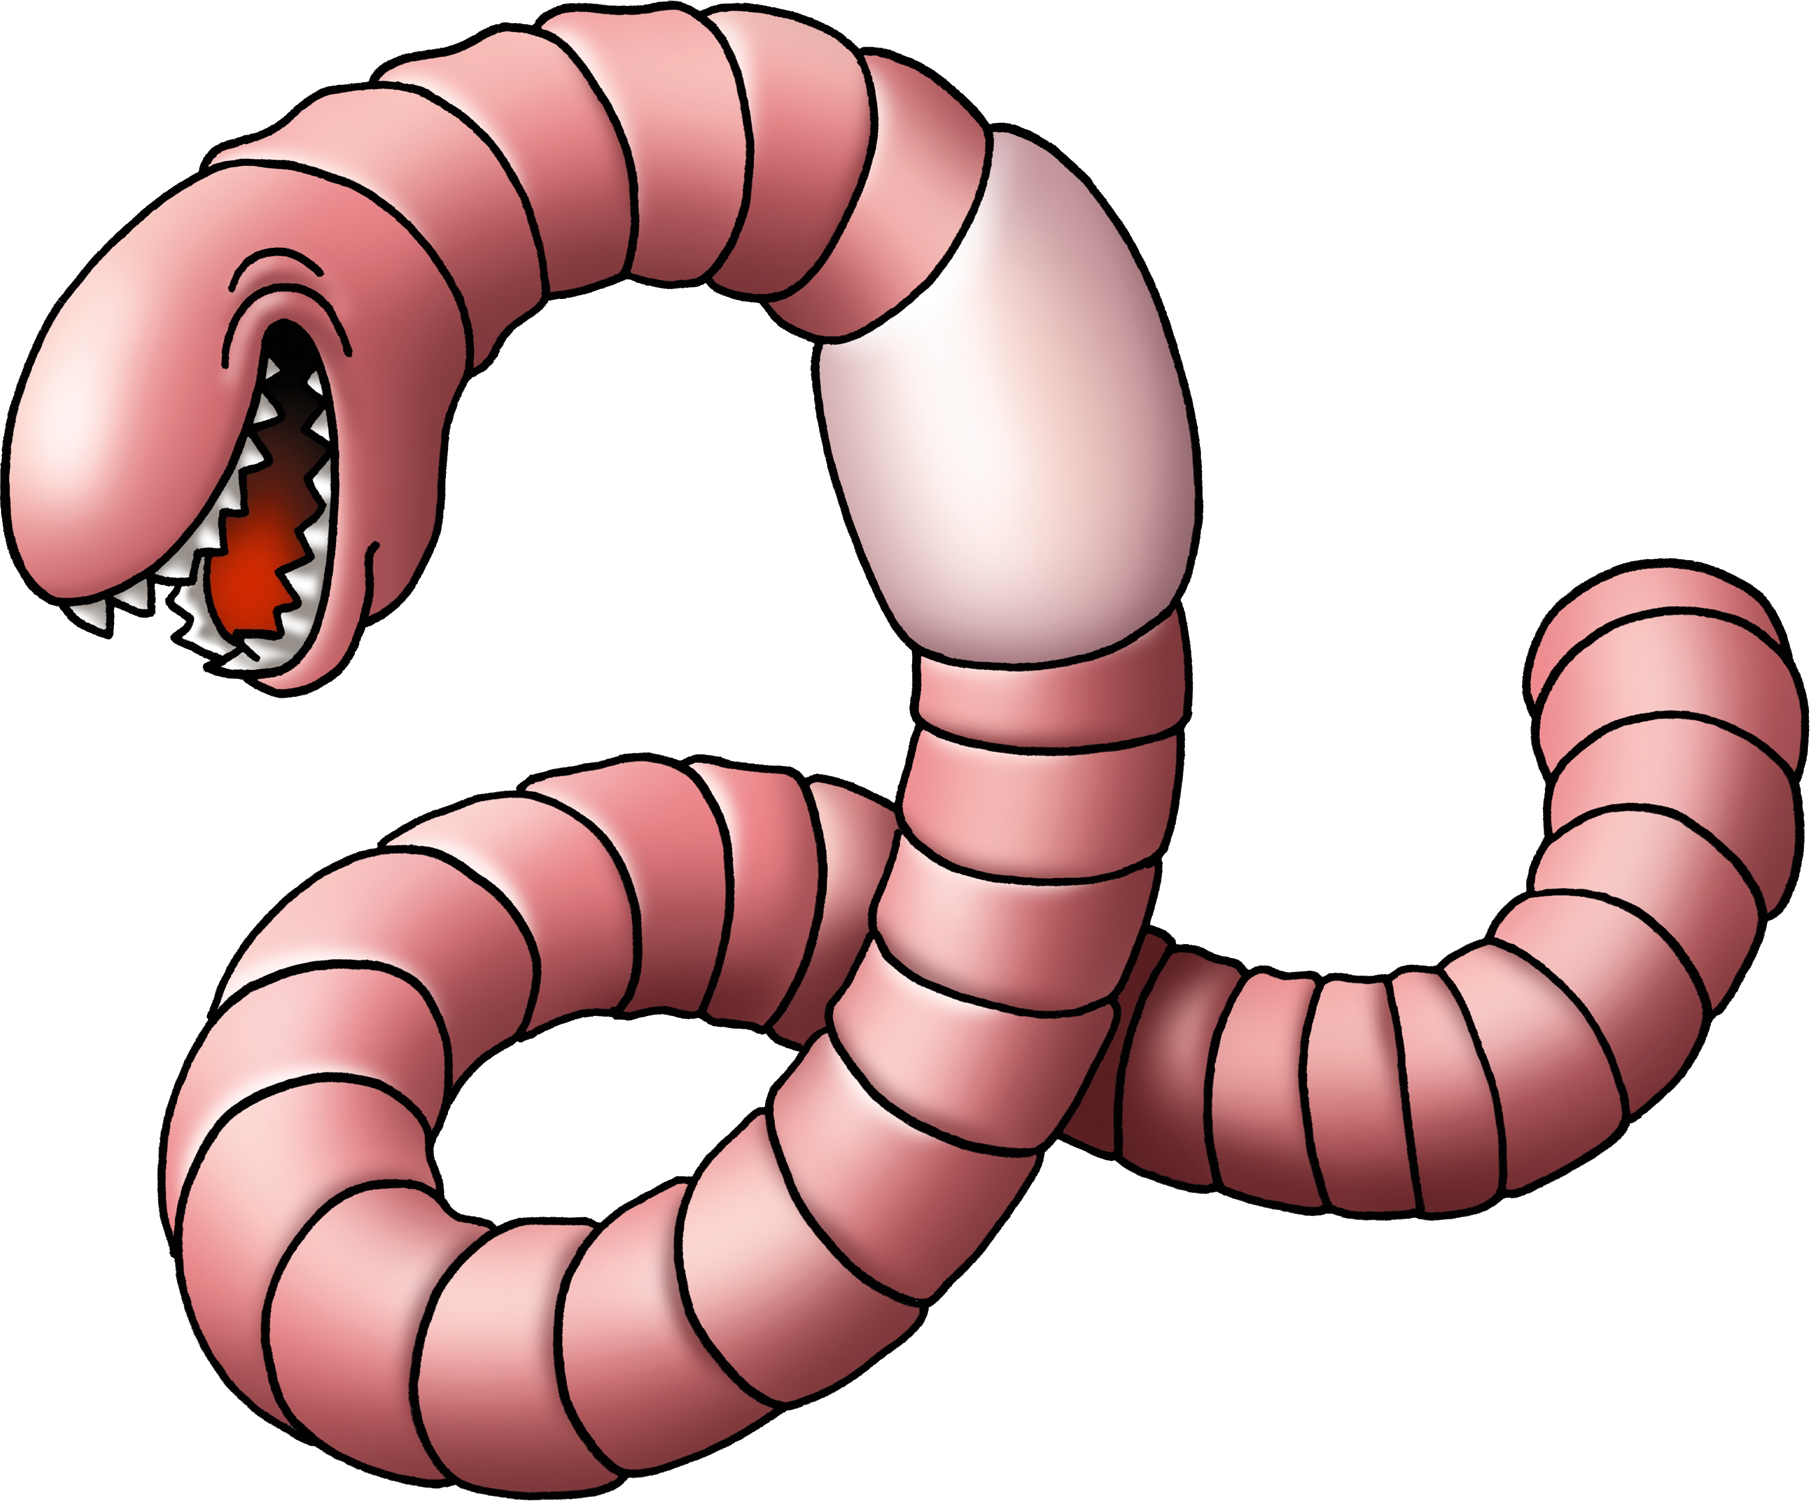 Fidget worm. Worms черви. Монстр кольчатый червь.